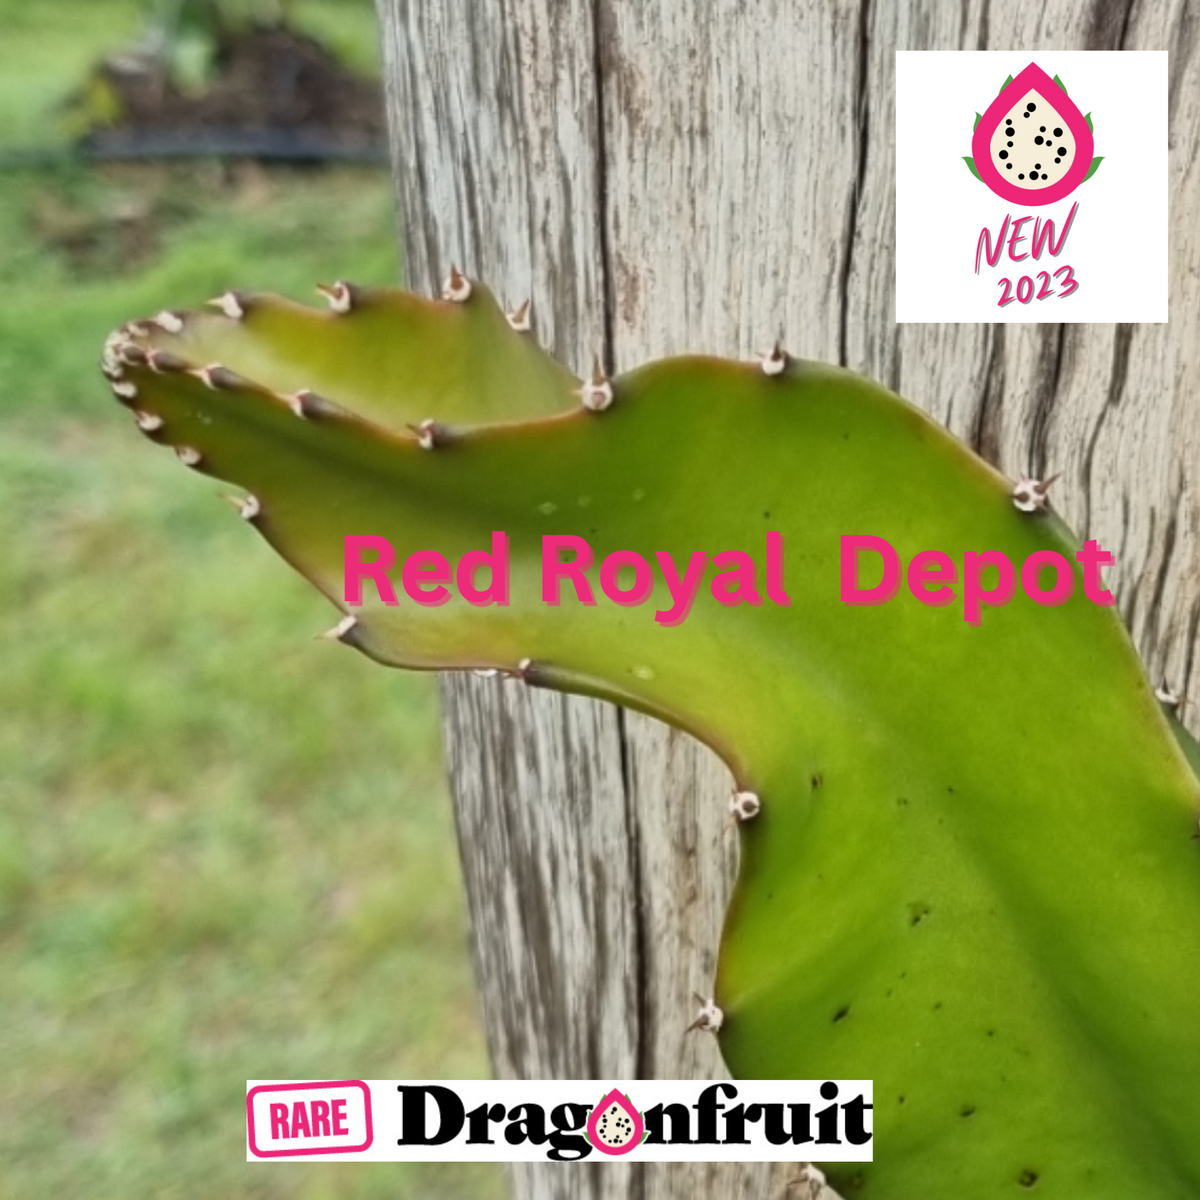 Red Royal DEPOT dragon fruit